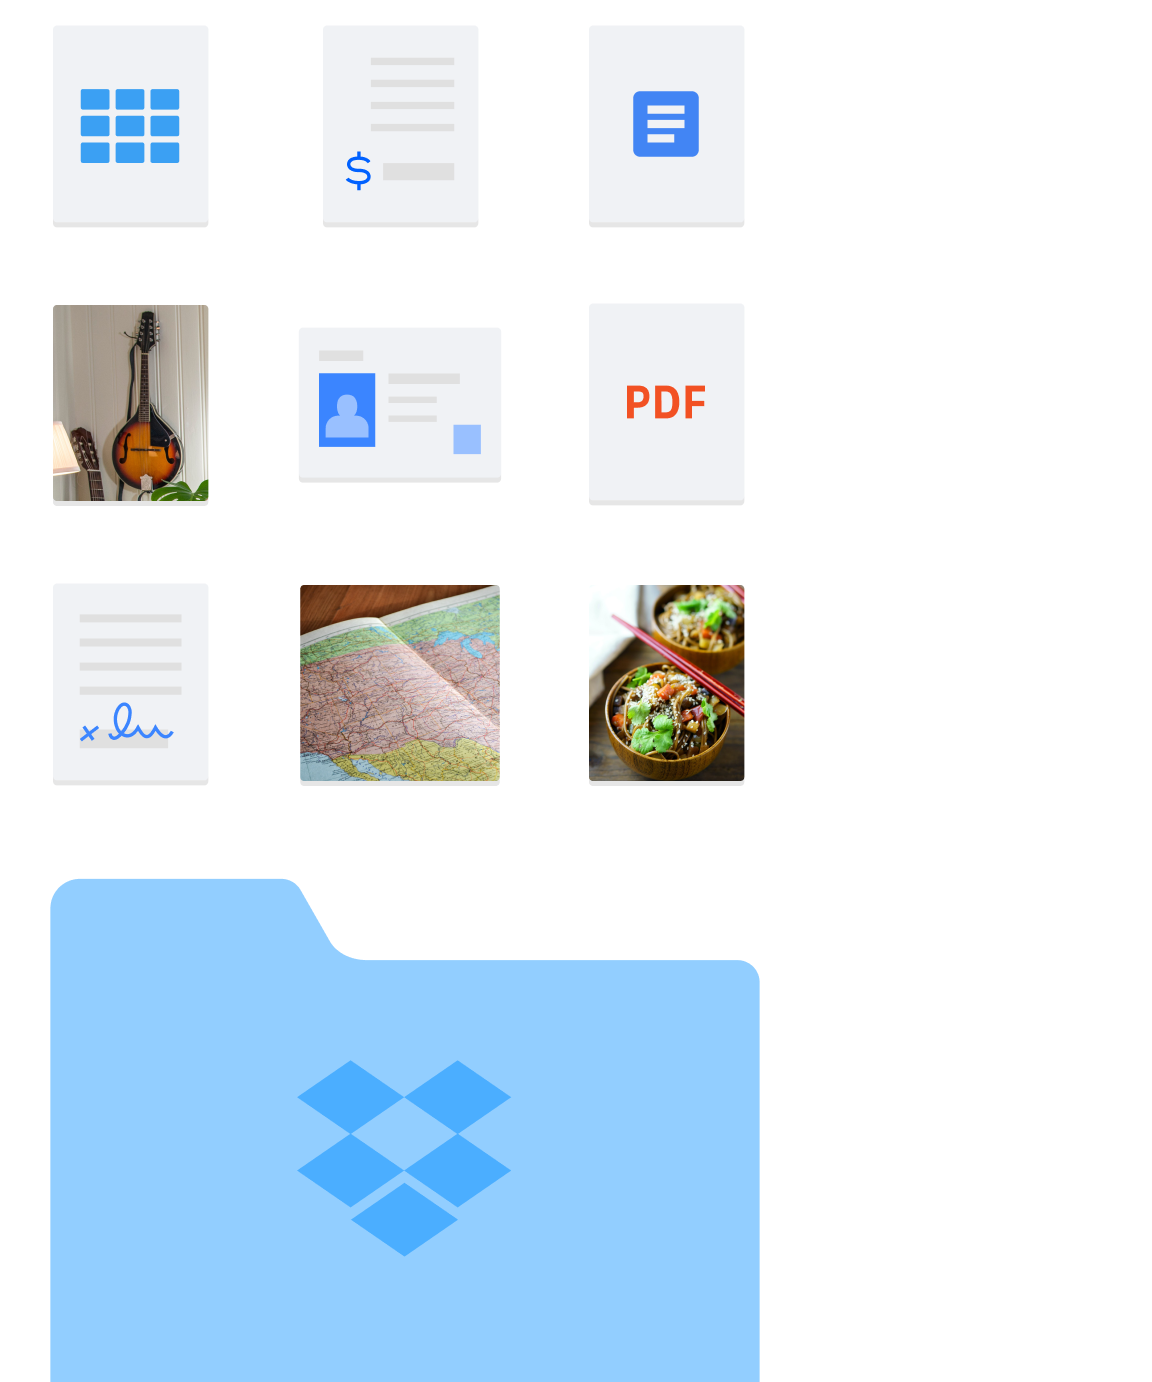 Зображення різних типів папок і файлів (наприклад, фотографій і документів), які можна зберігати в Dropbox.